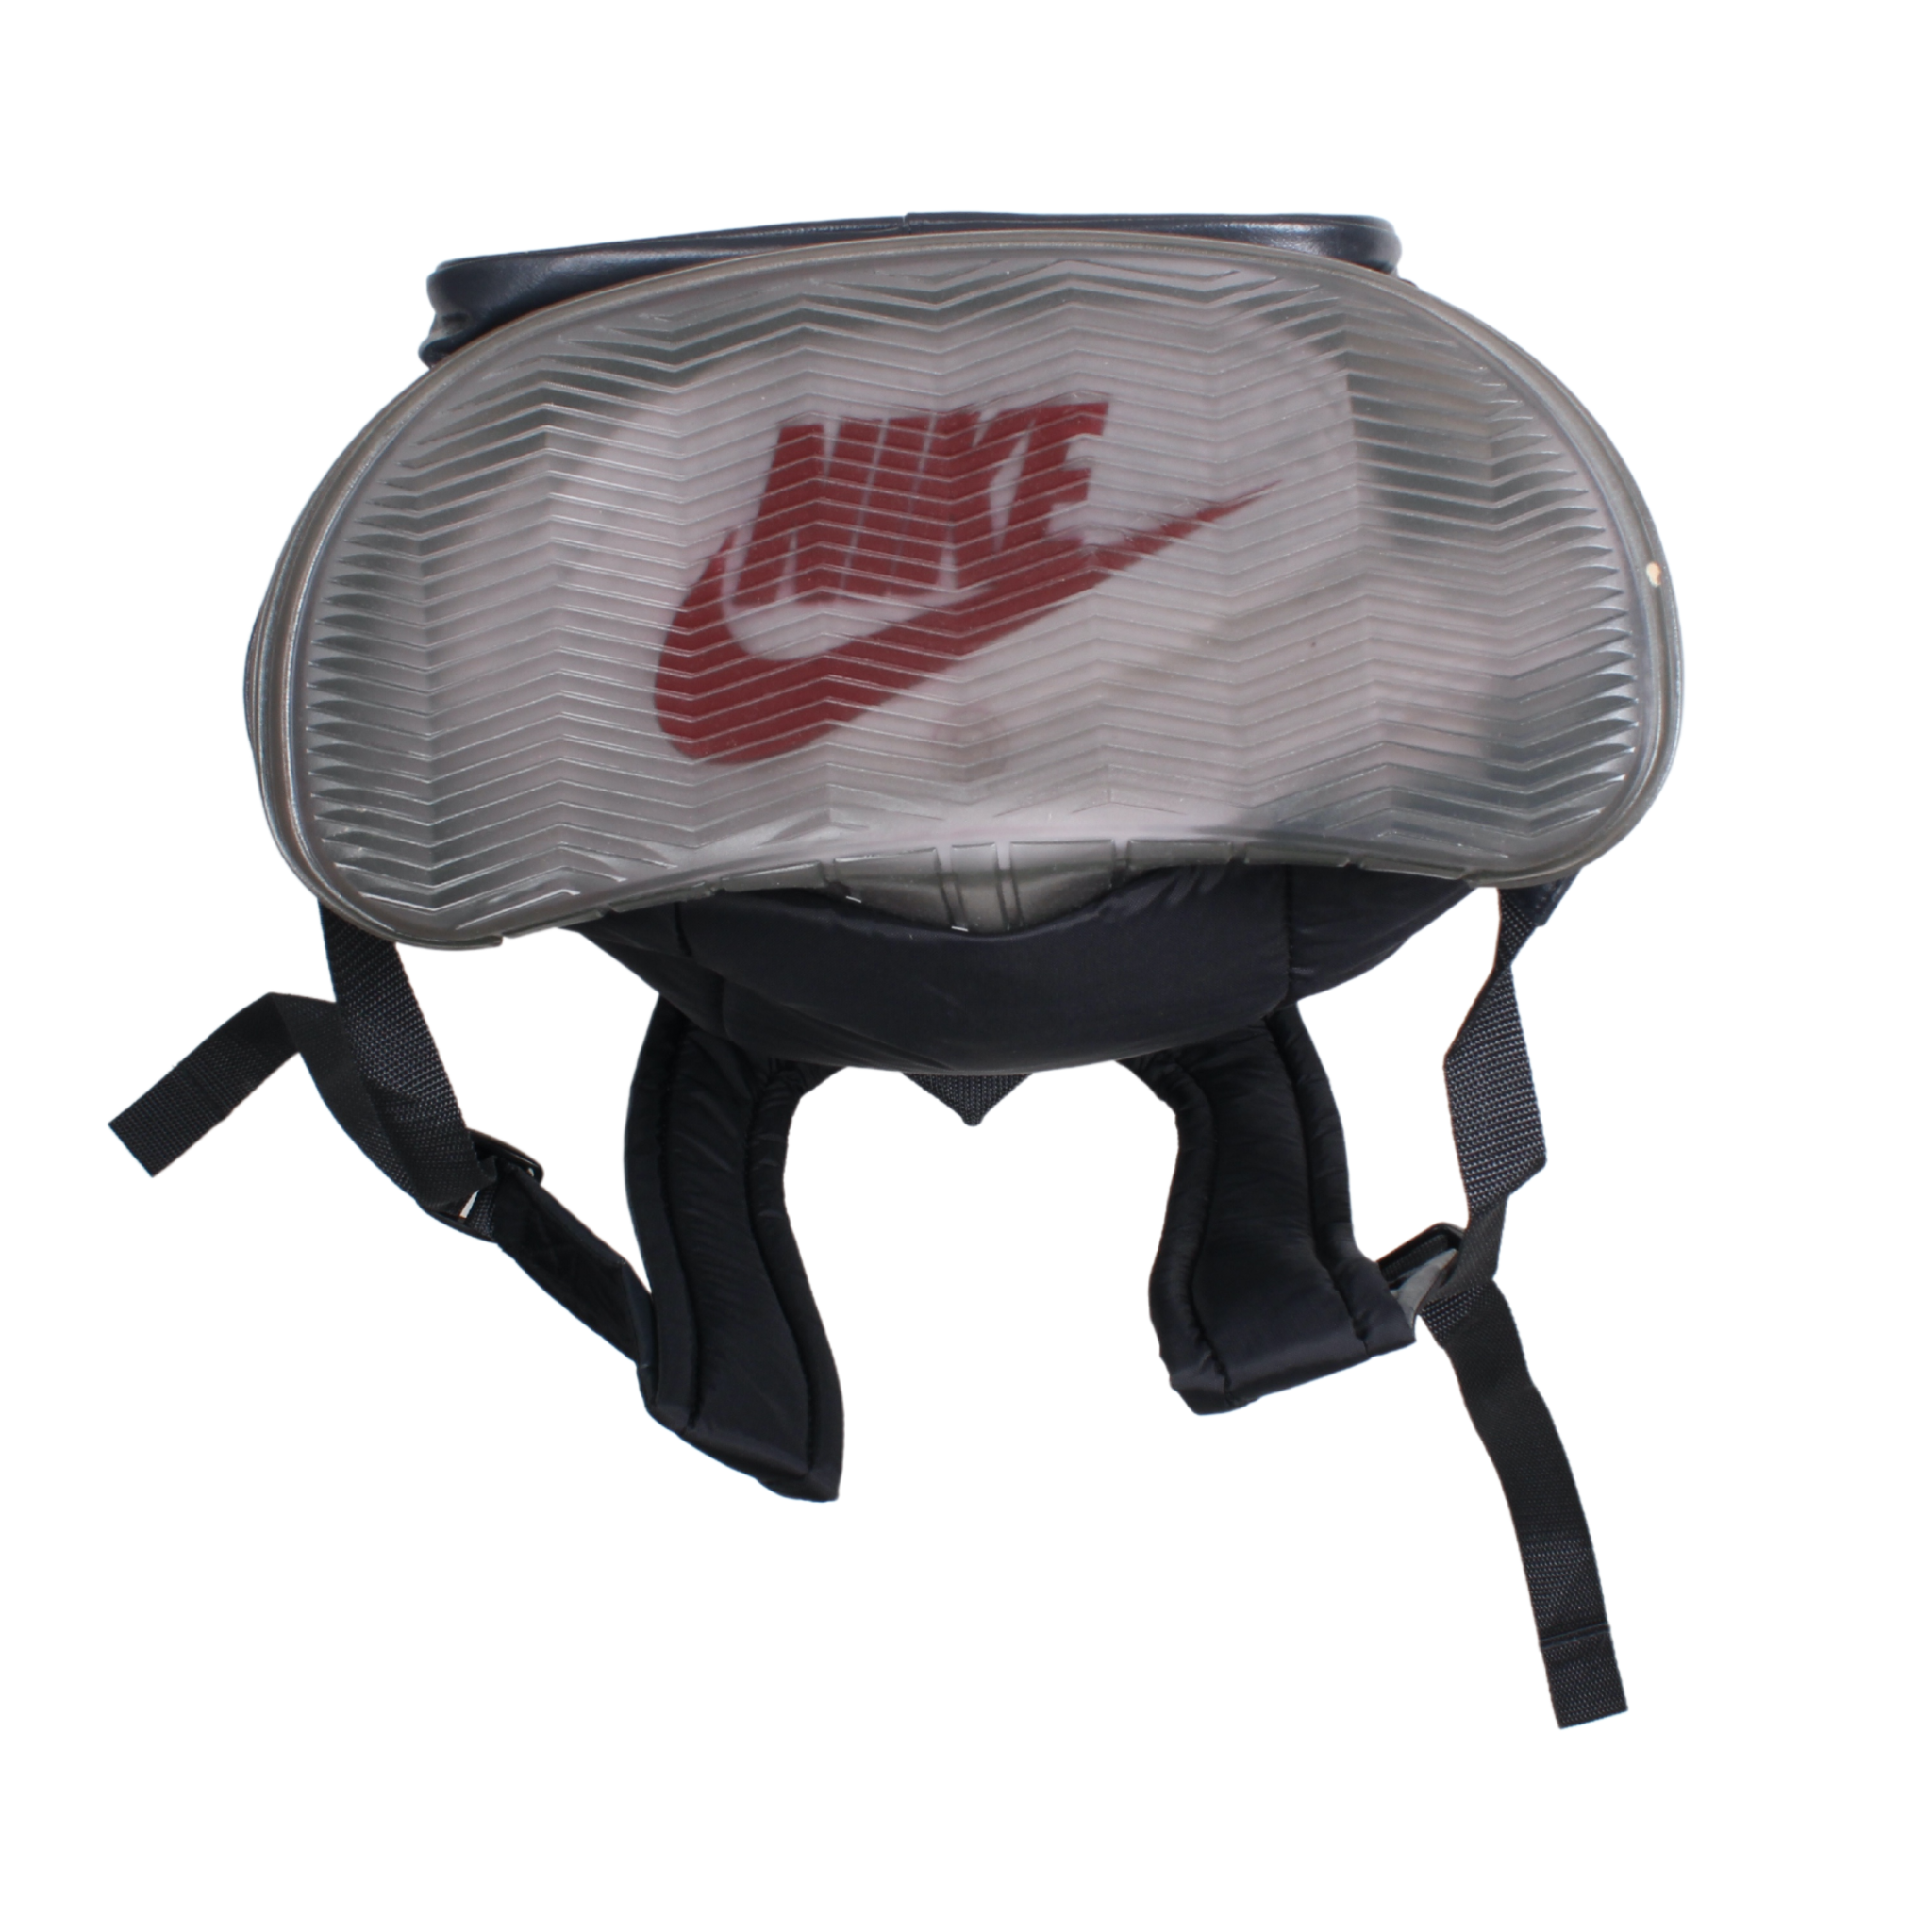 Vintage Nike Rucksack BNWT